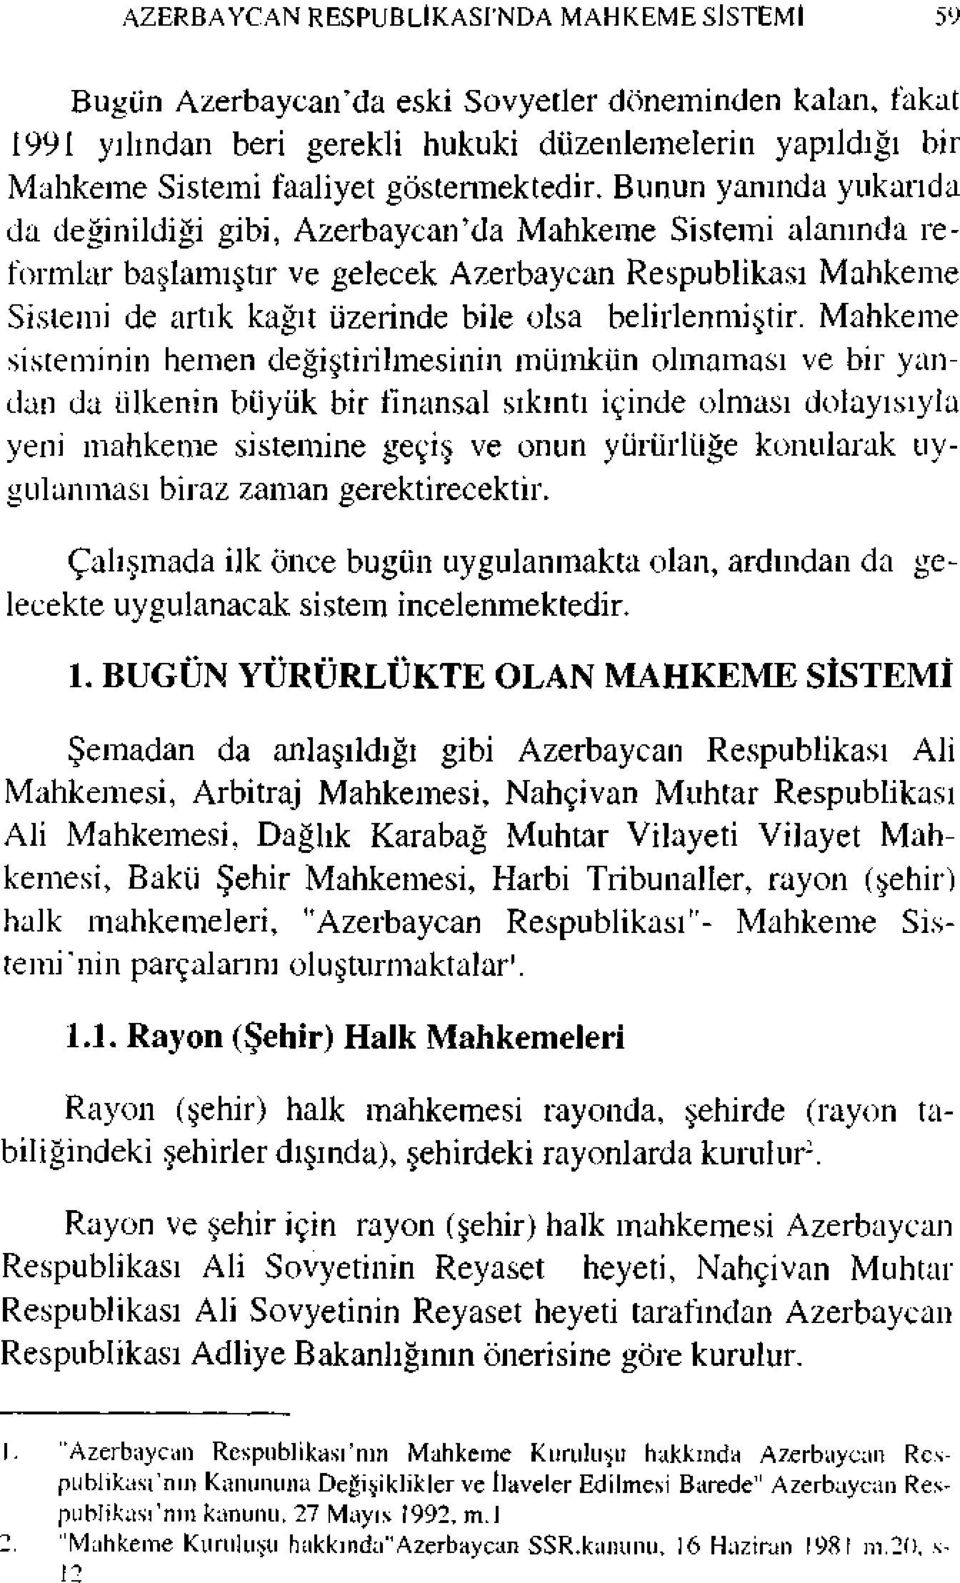 Bunun yanında yukarıda da değinildiği gibi, Azerbaycan'da Mahkeme Sistemi alanında reformlar başlamıştır ve gelecek Azerbaycan Respublikası Mahkeme Sistemi de artık kağıt üzerinde bile olsa